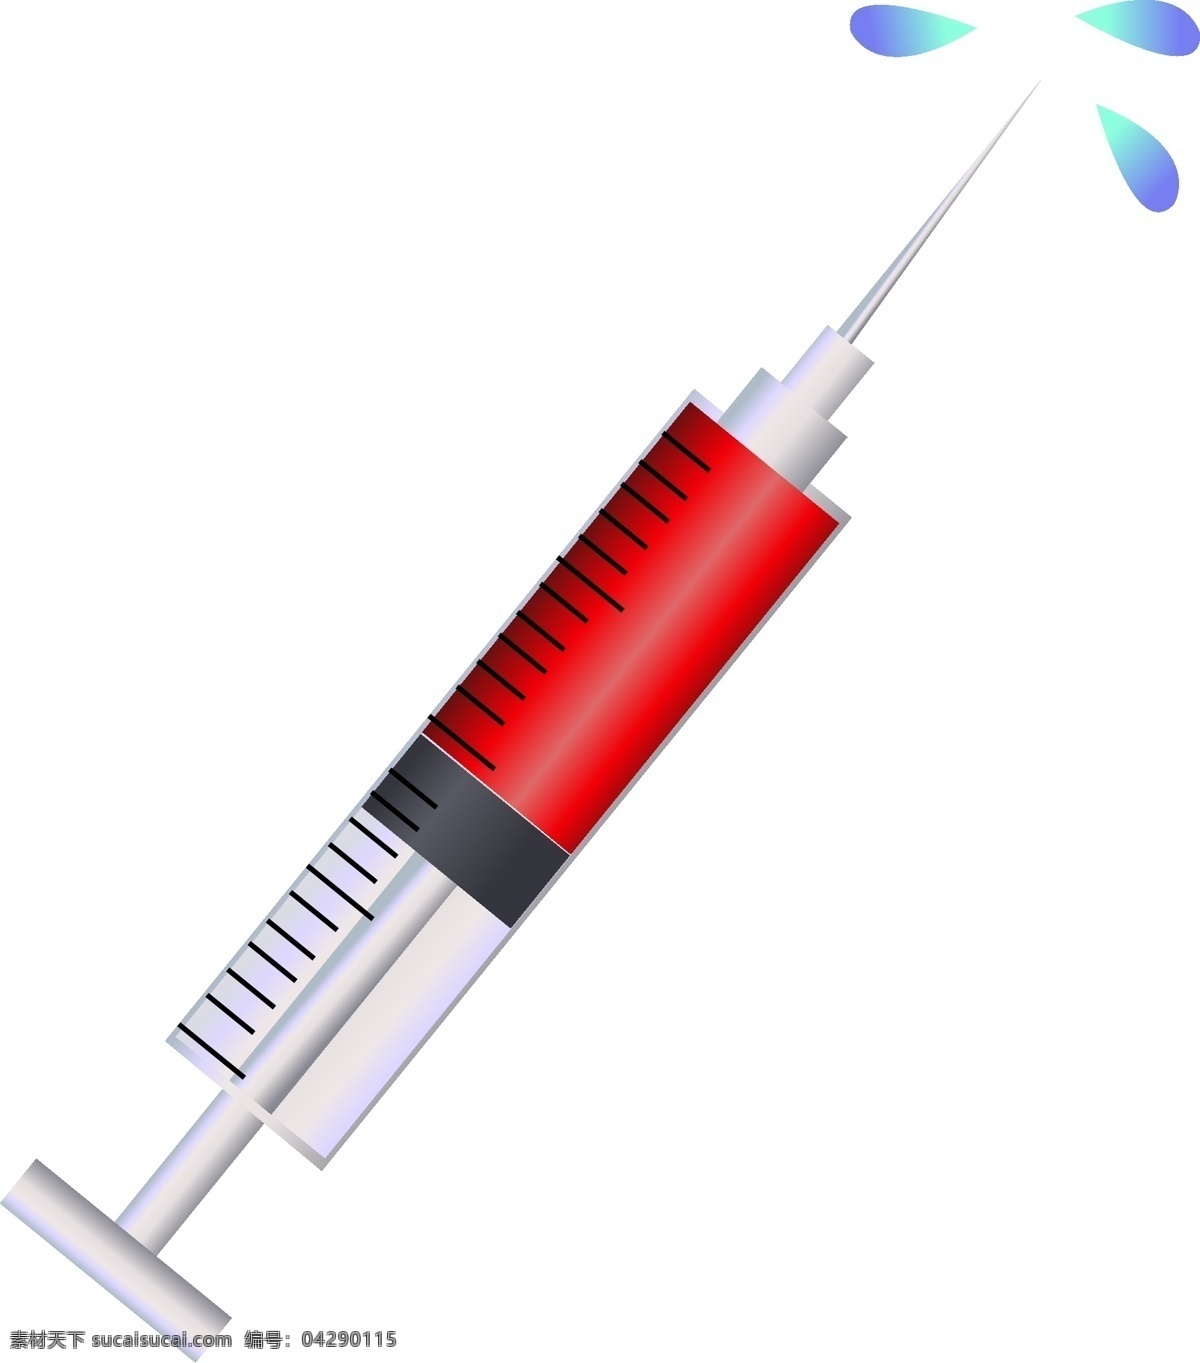 卡通 针管 液体 插图 红色液体 医学用品 医生用品 白色针管 溅出的液体 医疗用品 医用针管 注意身体健康